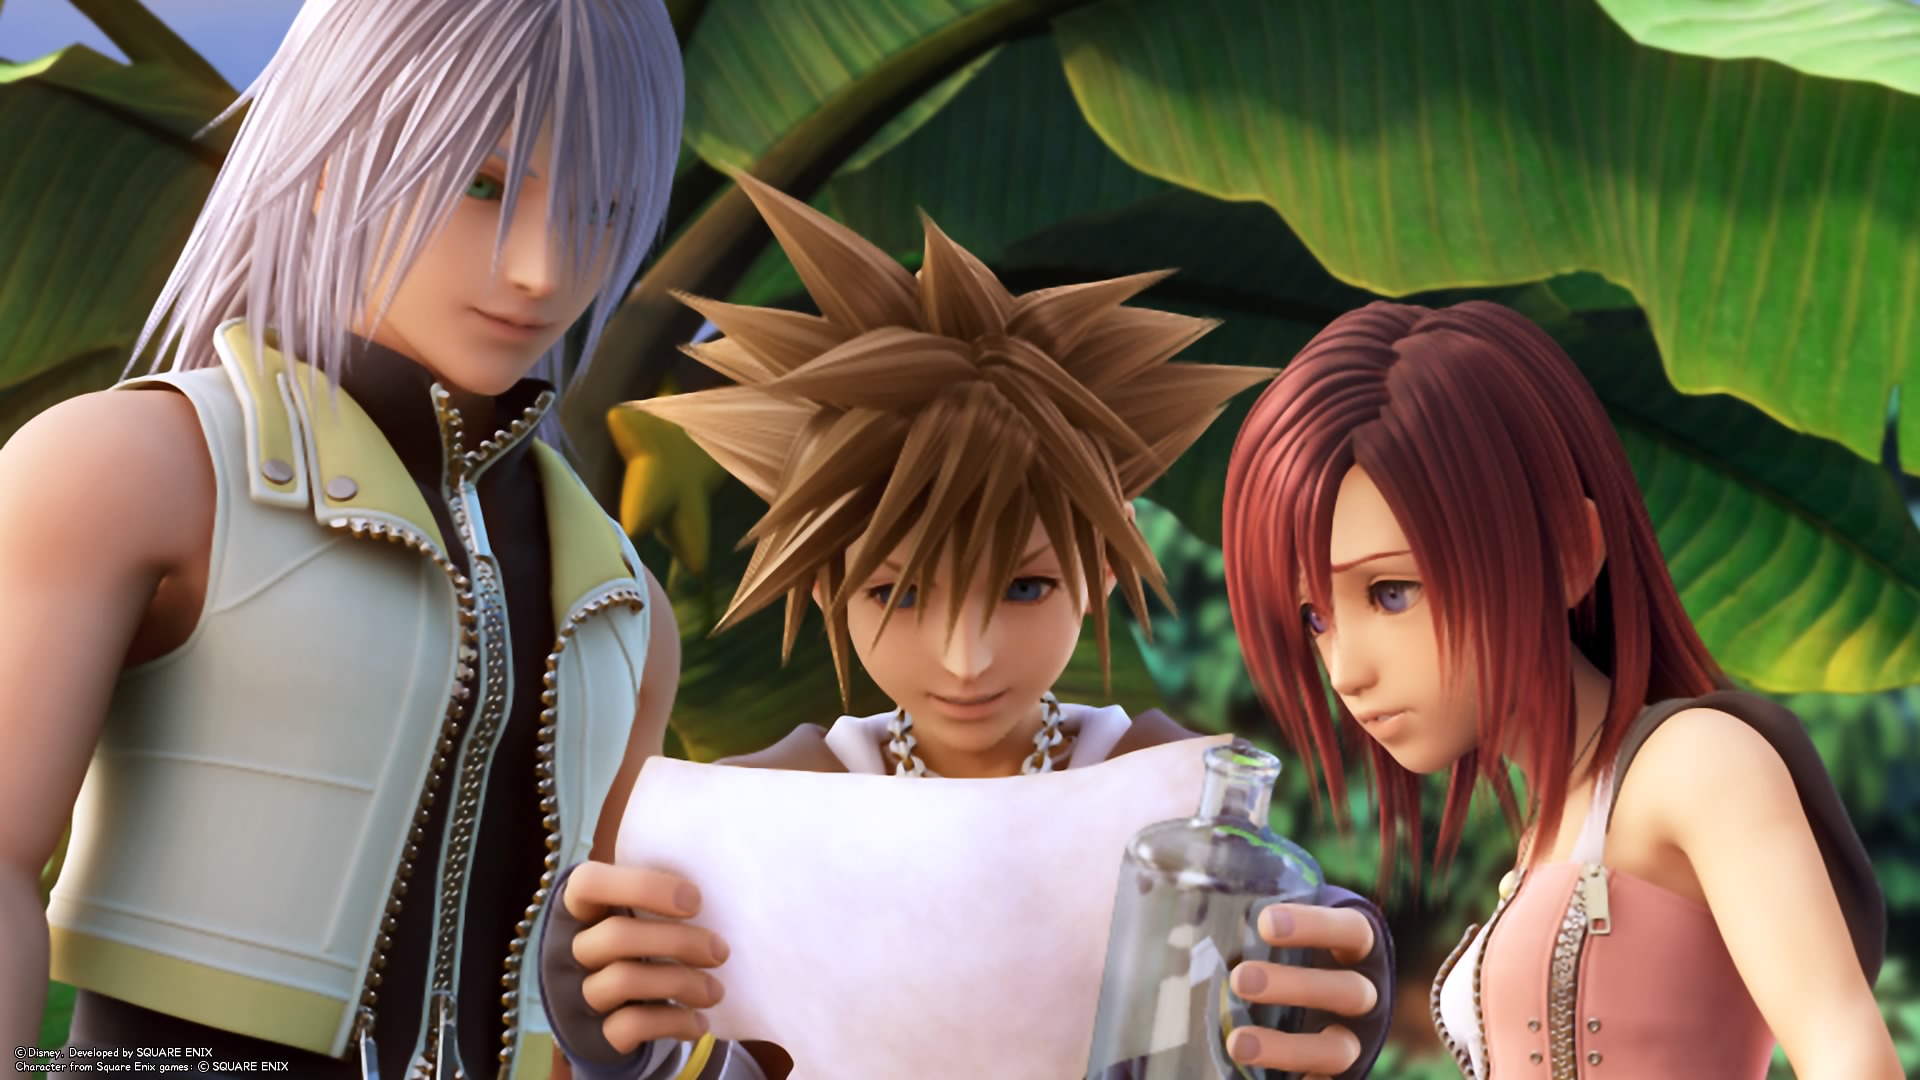 Sora how to use. Kingdom Hearts Каири Рику. Kingdom Hearts Сора и Кайри. Kingdom Hearts 2 Riku. Kingdom Hearts 3 Riku.